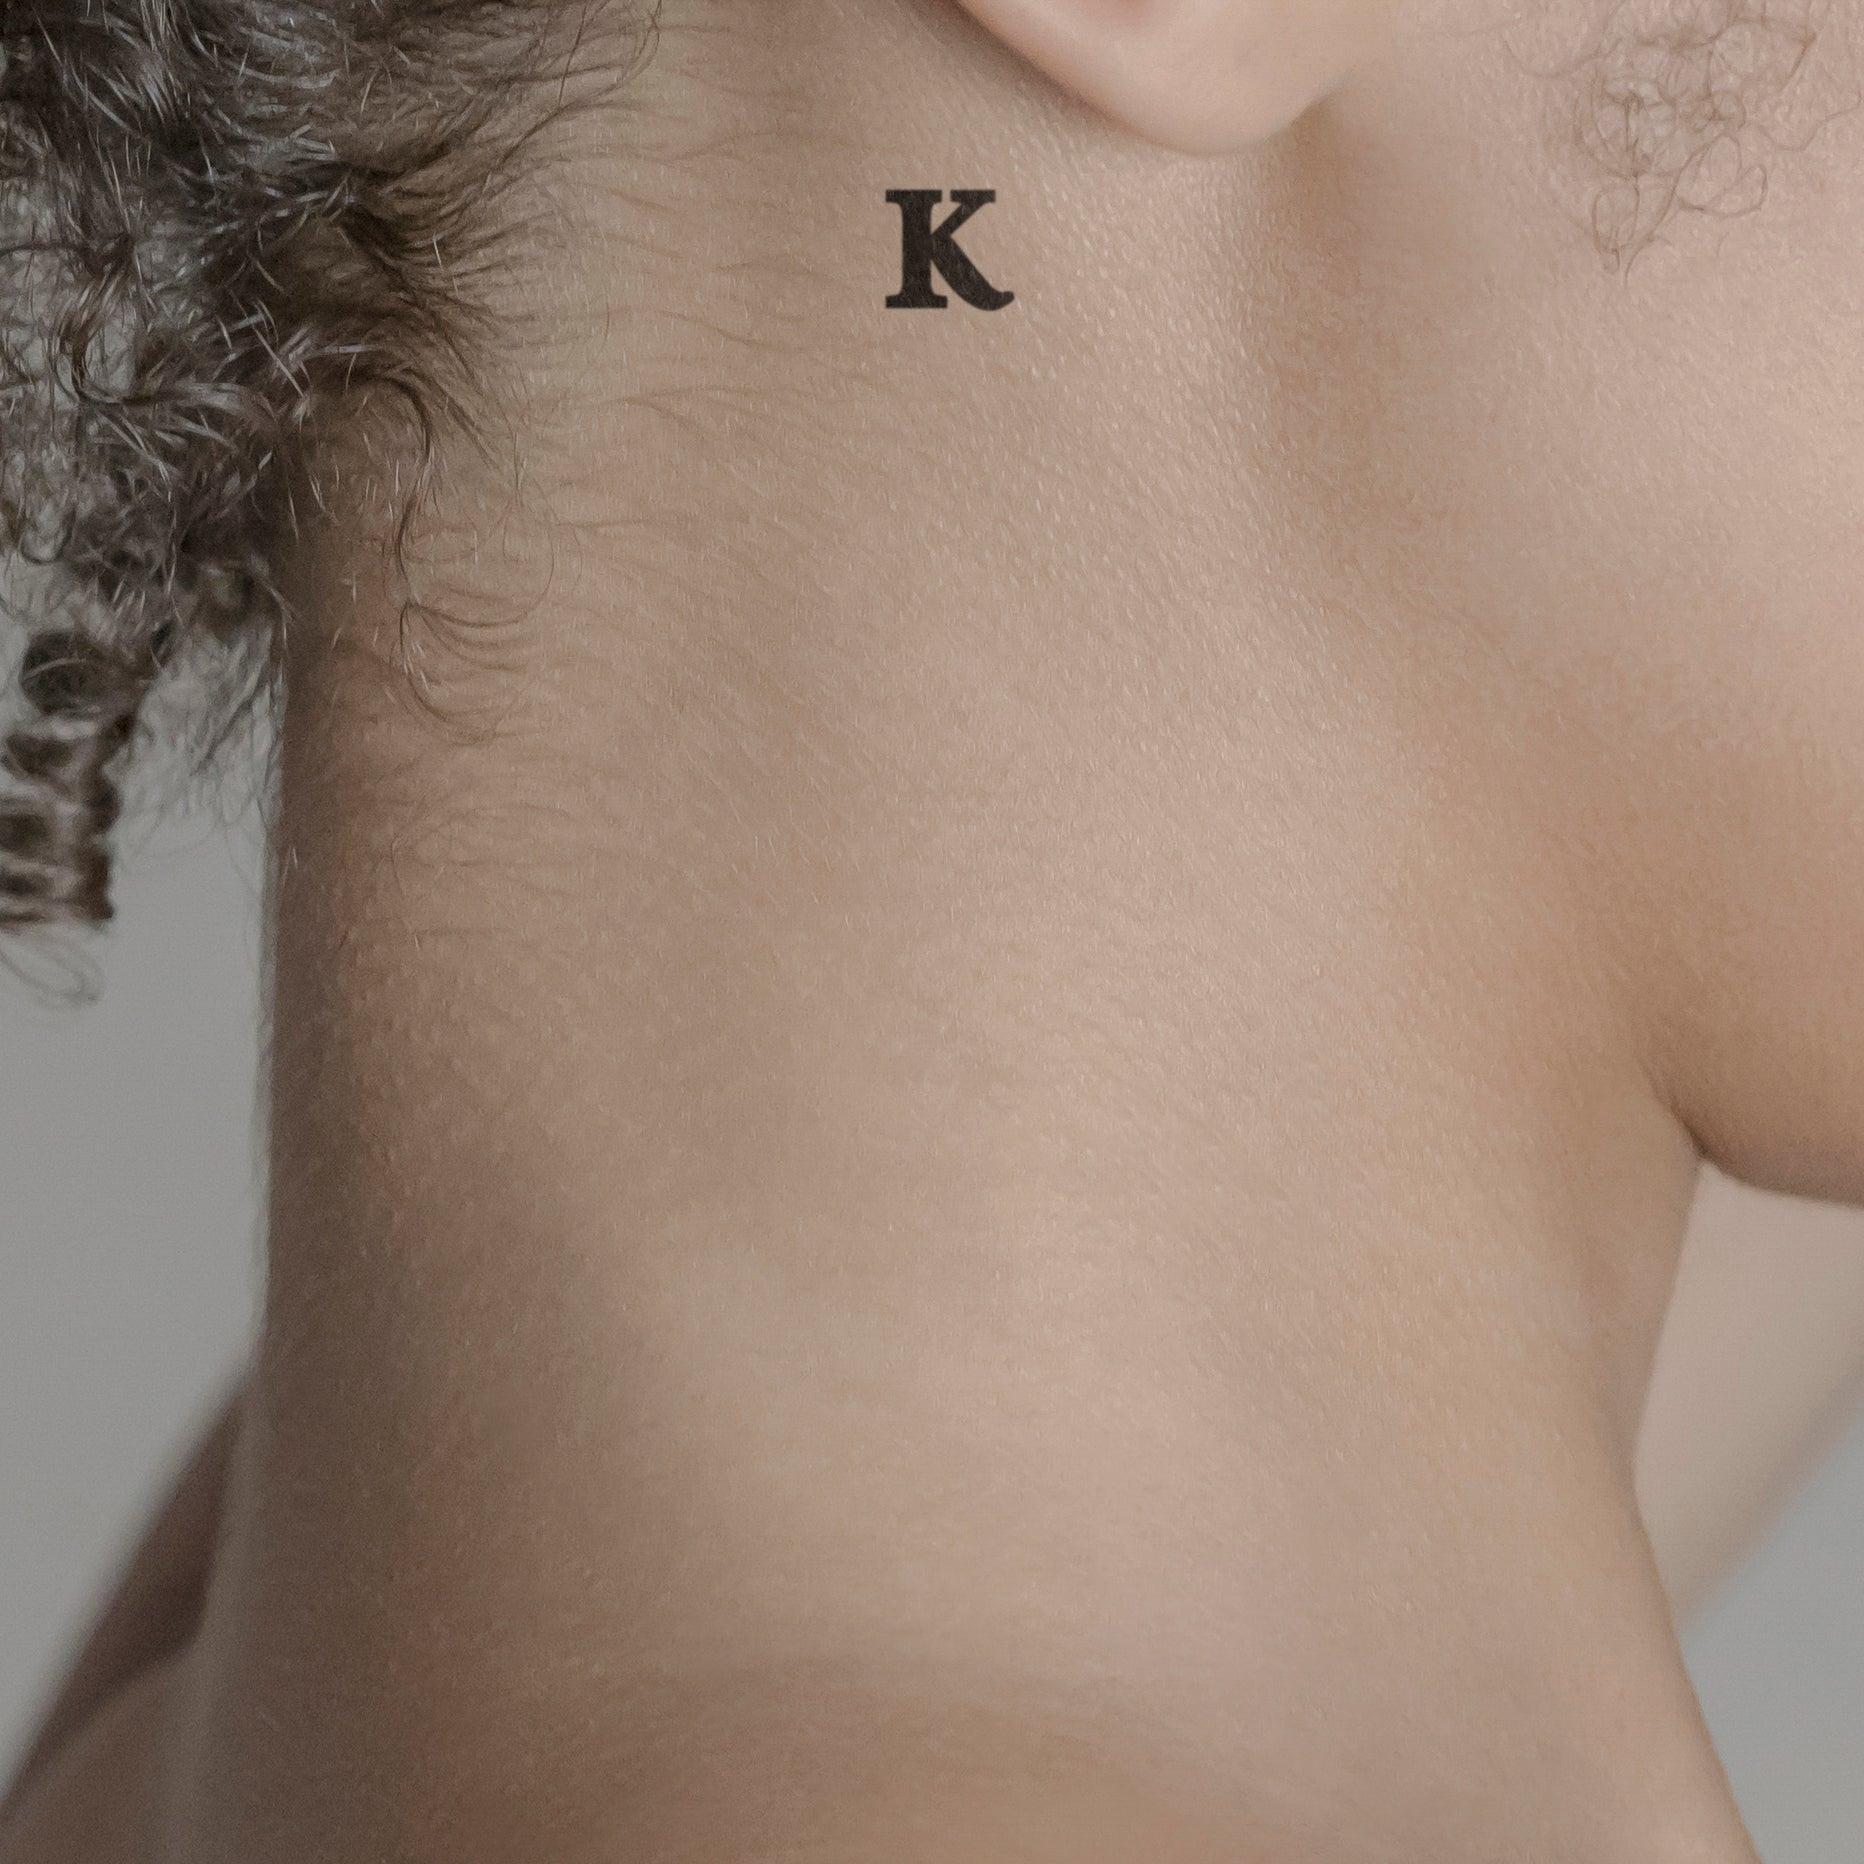 Schriftzug Tattoo Grossbuchstabe: K von minink, der Marke für temporäre Tattoos.